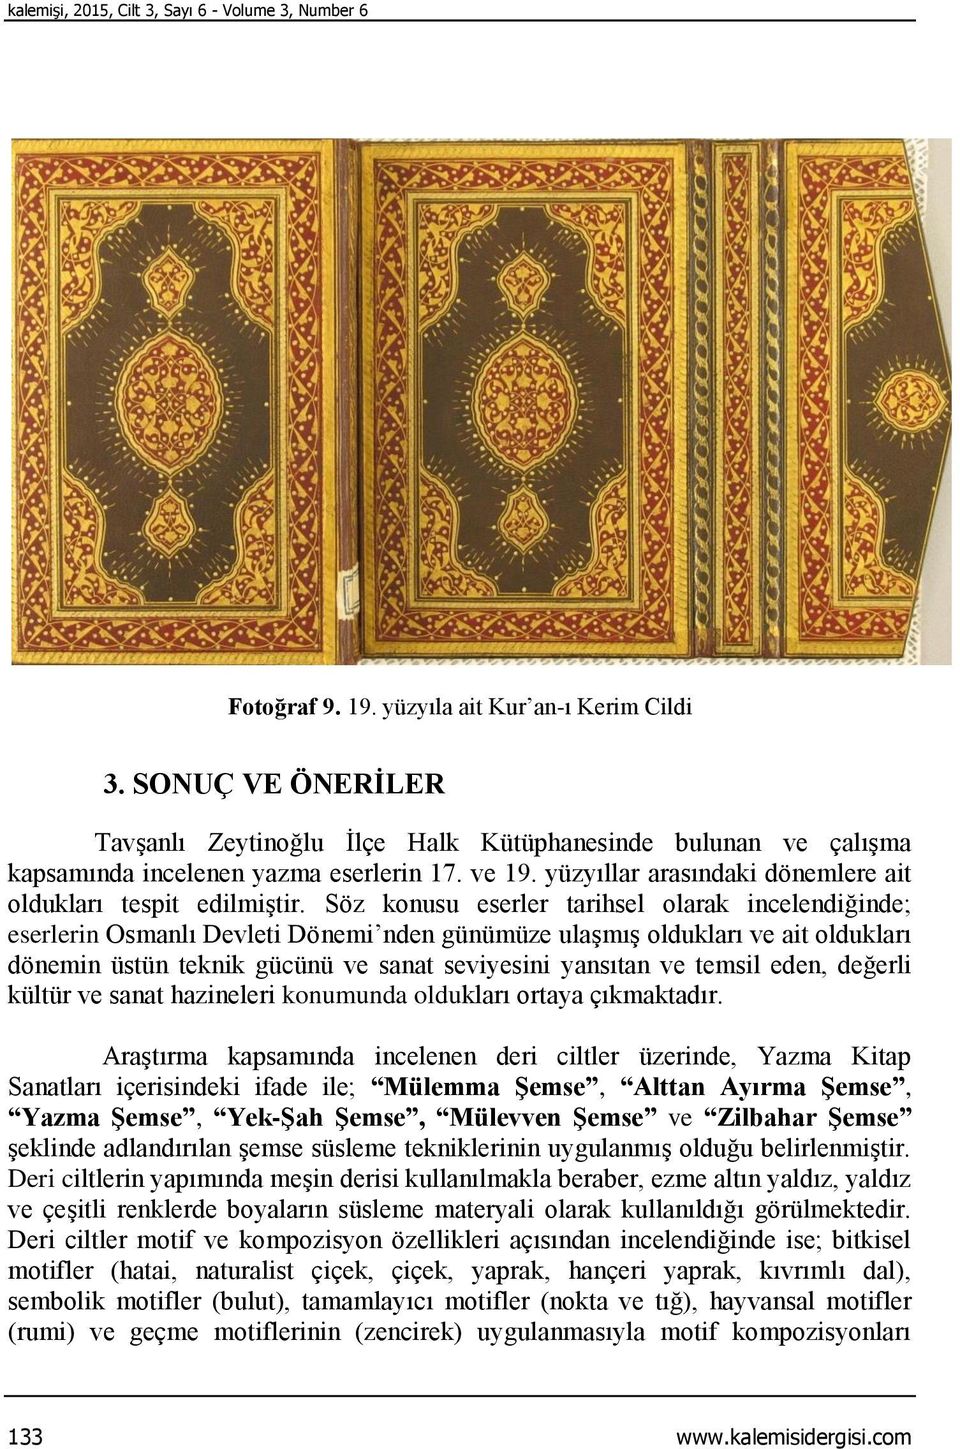 Söz konusu eserler tarihsel olarak incelendiğinde; eserlerin Osmanlı Devleti Dönemi nden günümüze ulaşmış oldukları ve ait oldukları dönemin üstün teknik gücünü ve sanat seviyesini yansıtan ve temsil